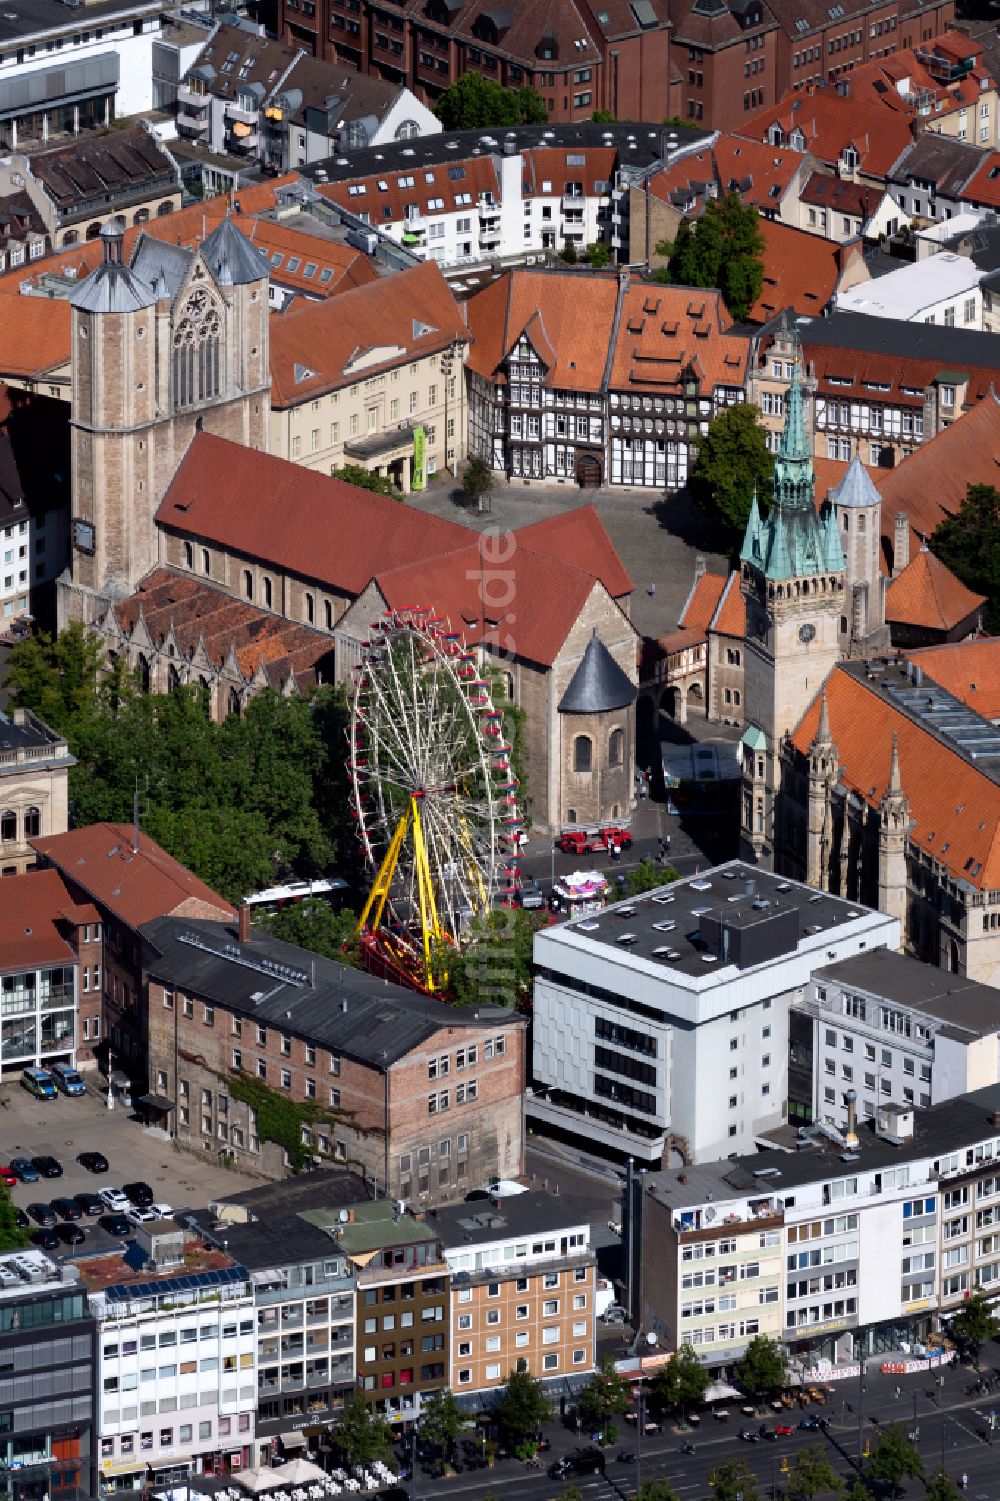 Luftaufnahme Braunschweig - Kirchengebäude des Braunschweiger Dom am Domplatz in Braunschweig im Bundesland Niedersachsen, Deutschland